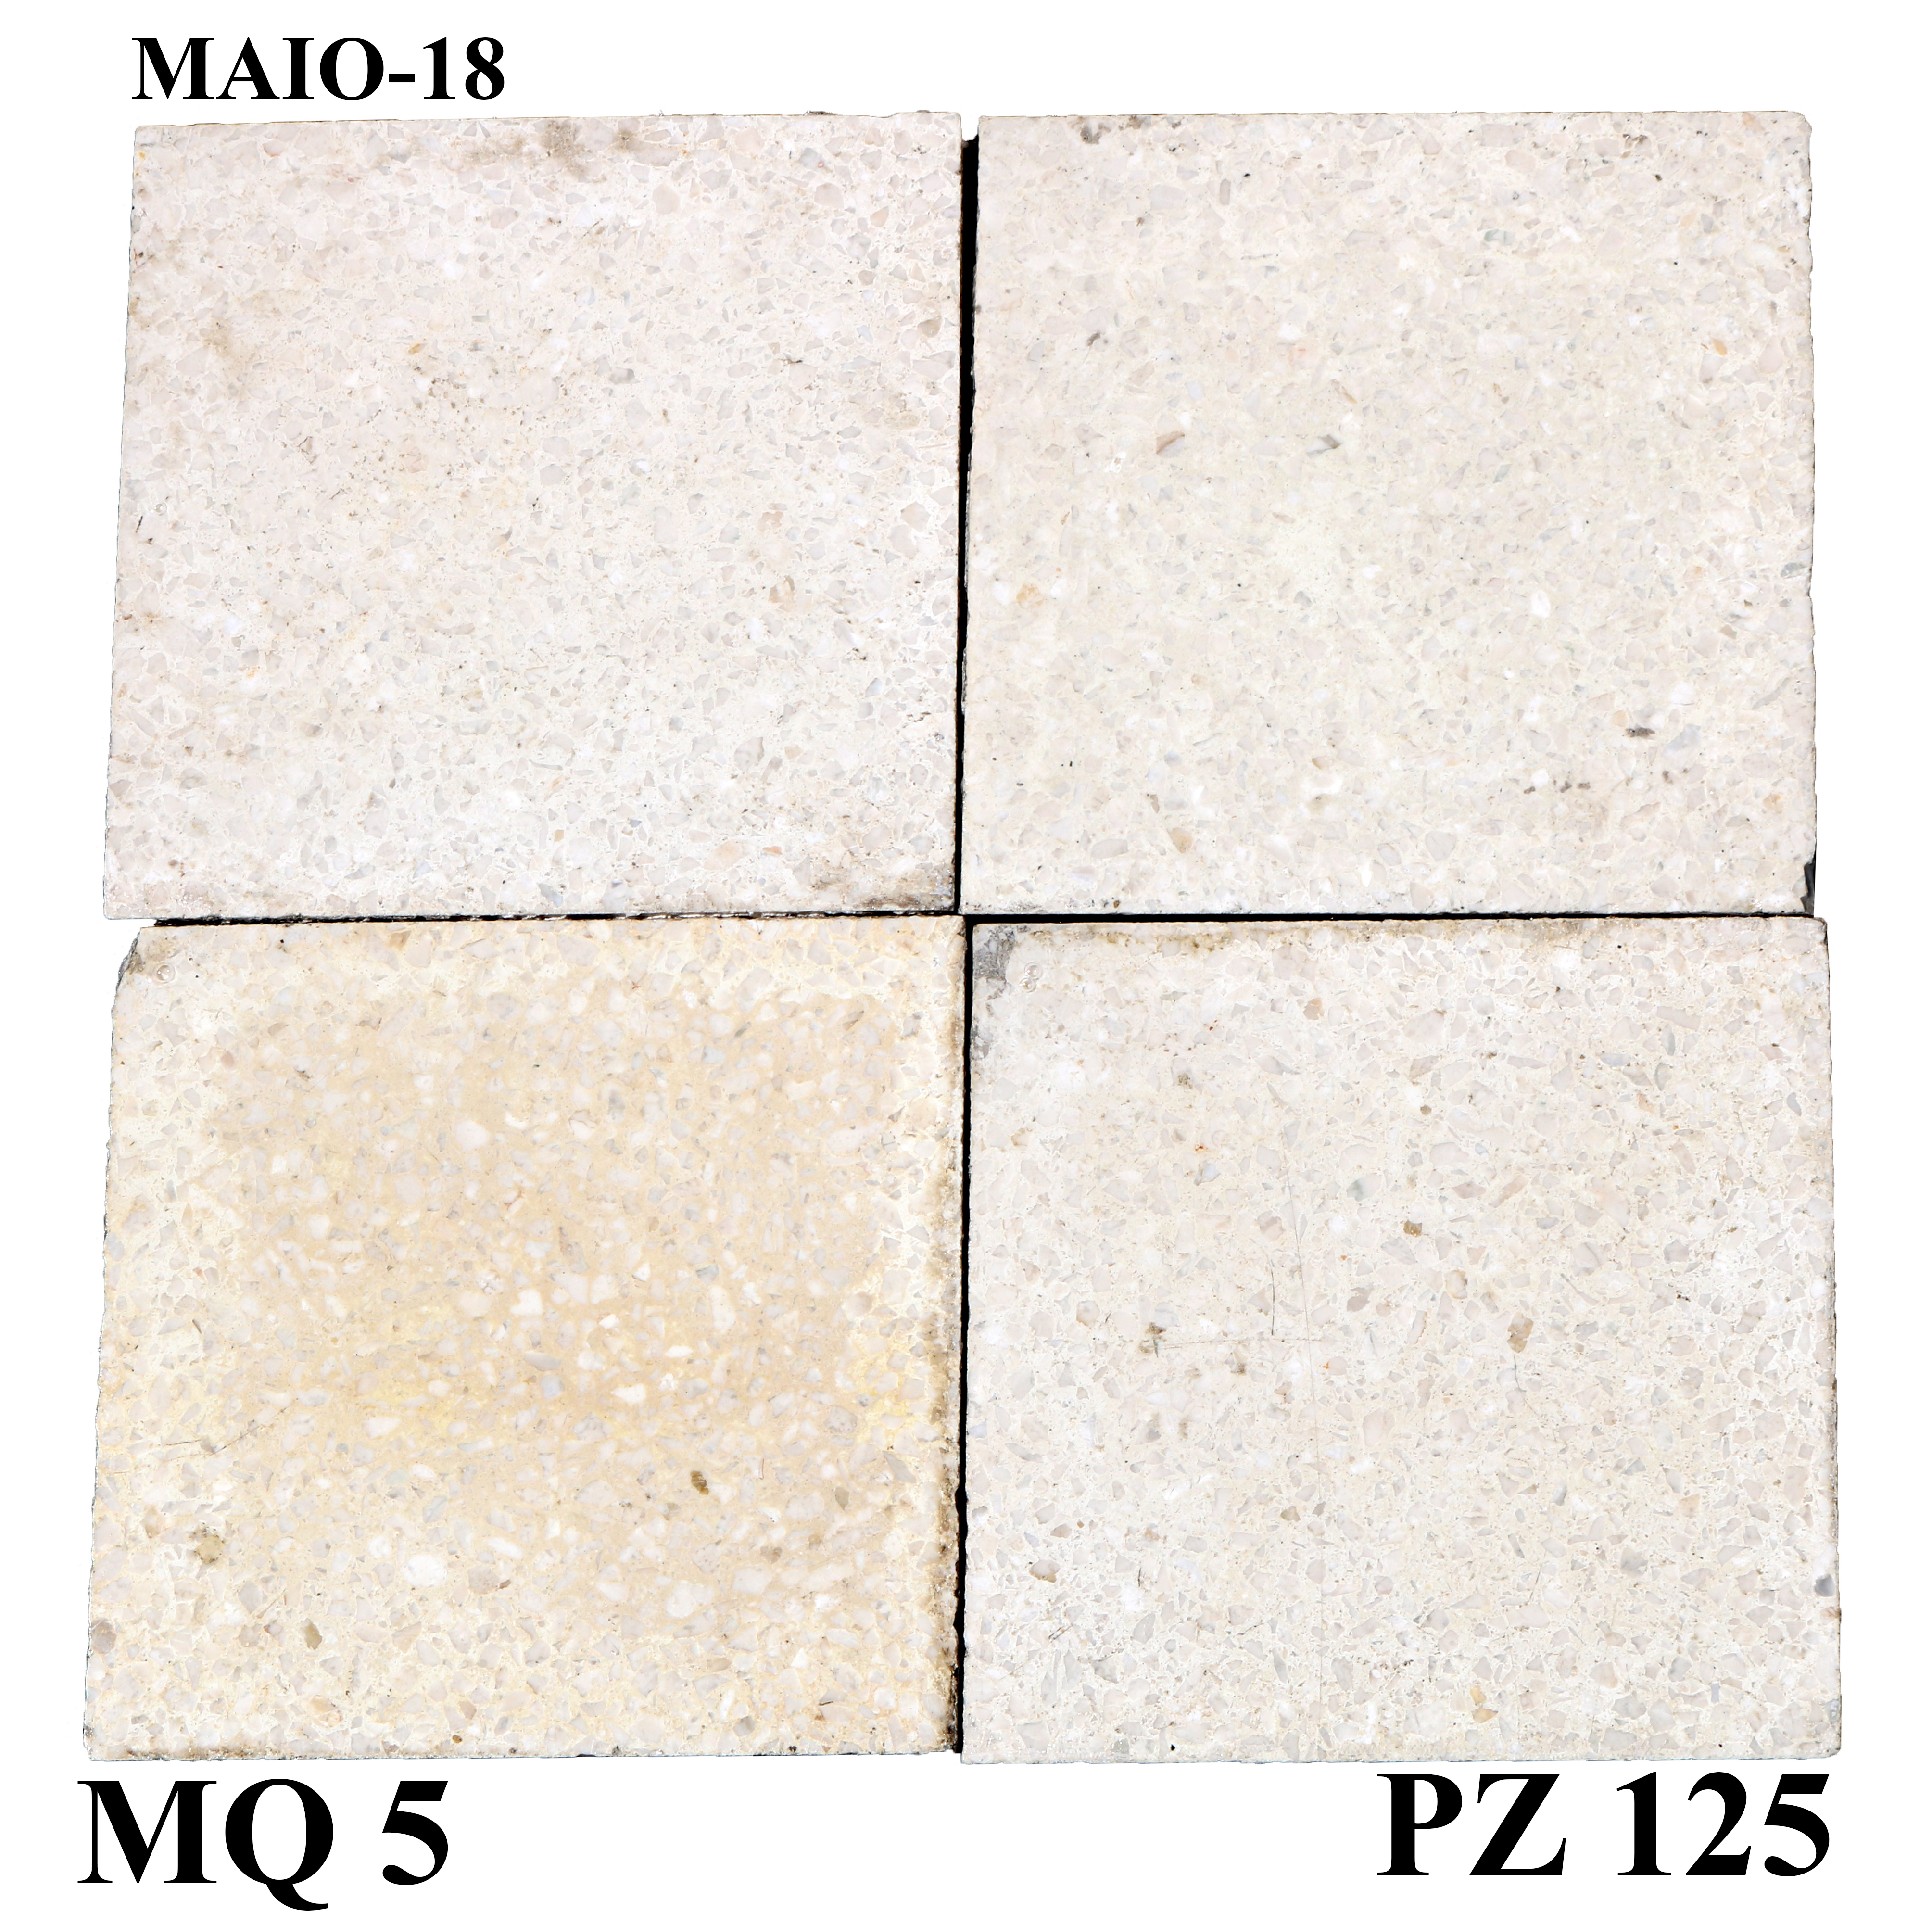 Antica pavimentazione in graniglia. cm 20x20. - Cementine e Graniglie - Pavimentazioni Antiche - Prodotti - Antichità Fiorillo